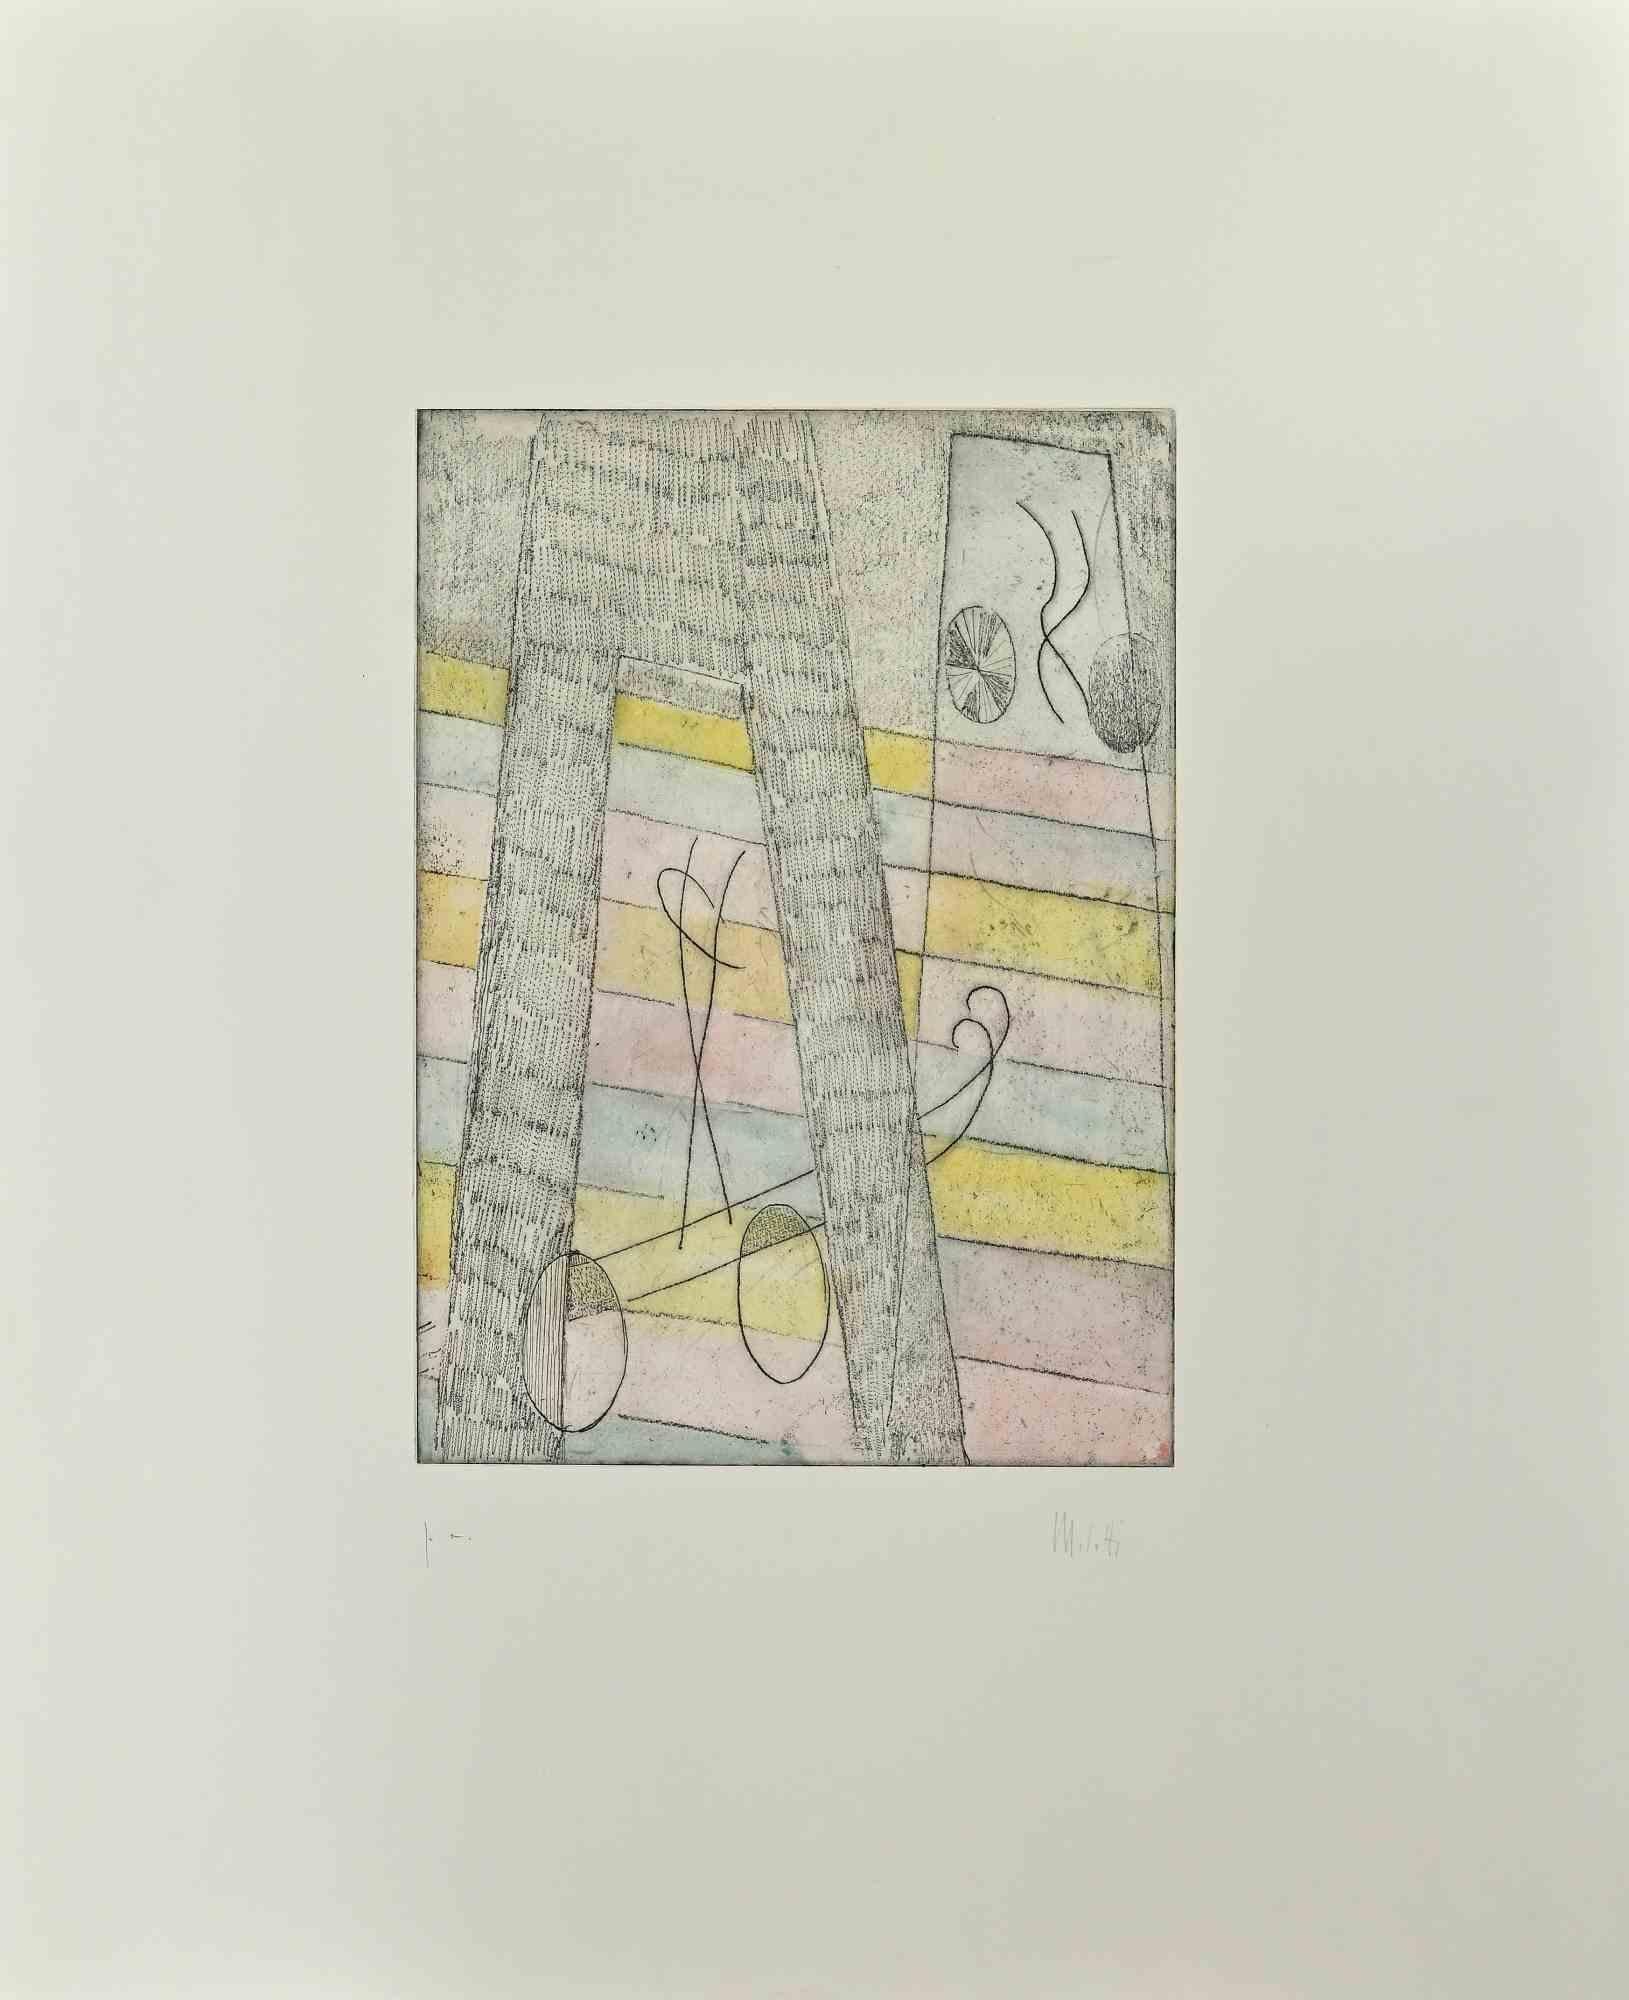 Untitled est une œuvre d'art contemporain réalisée par l'artiste italien  Fausto Melotti (Rovereto, 1901 - Milan, 1986).

Gravure sur papier. Signé à la main dans la marge droite. édition p.a.

Magnifique gravure raffinée sur papier représentant une